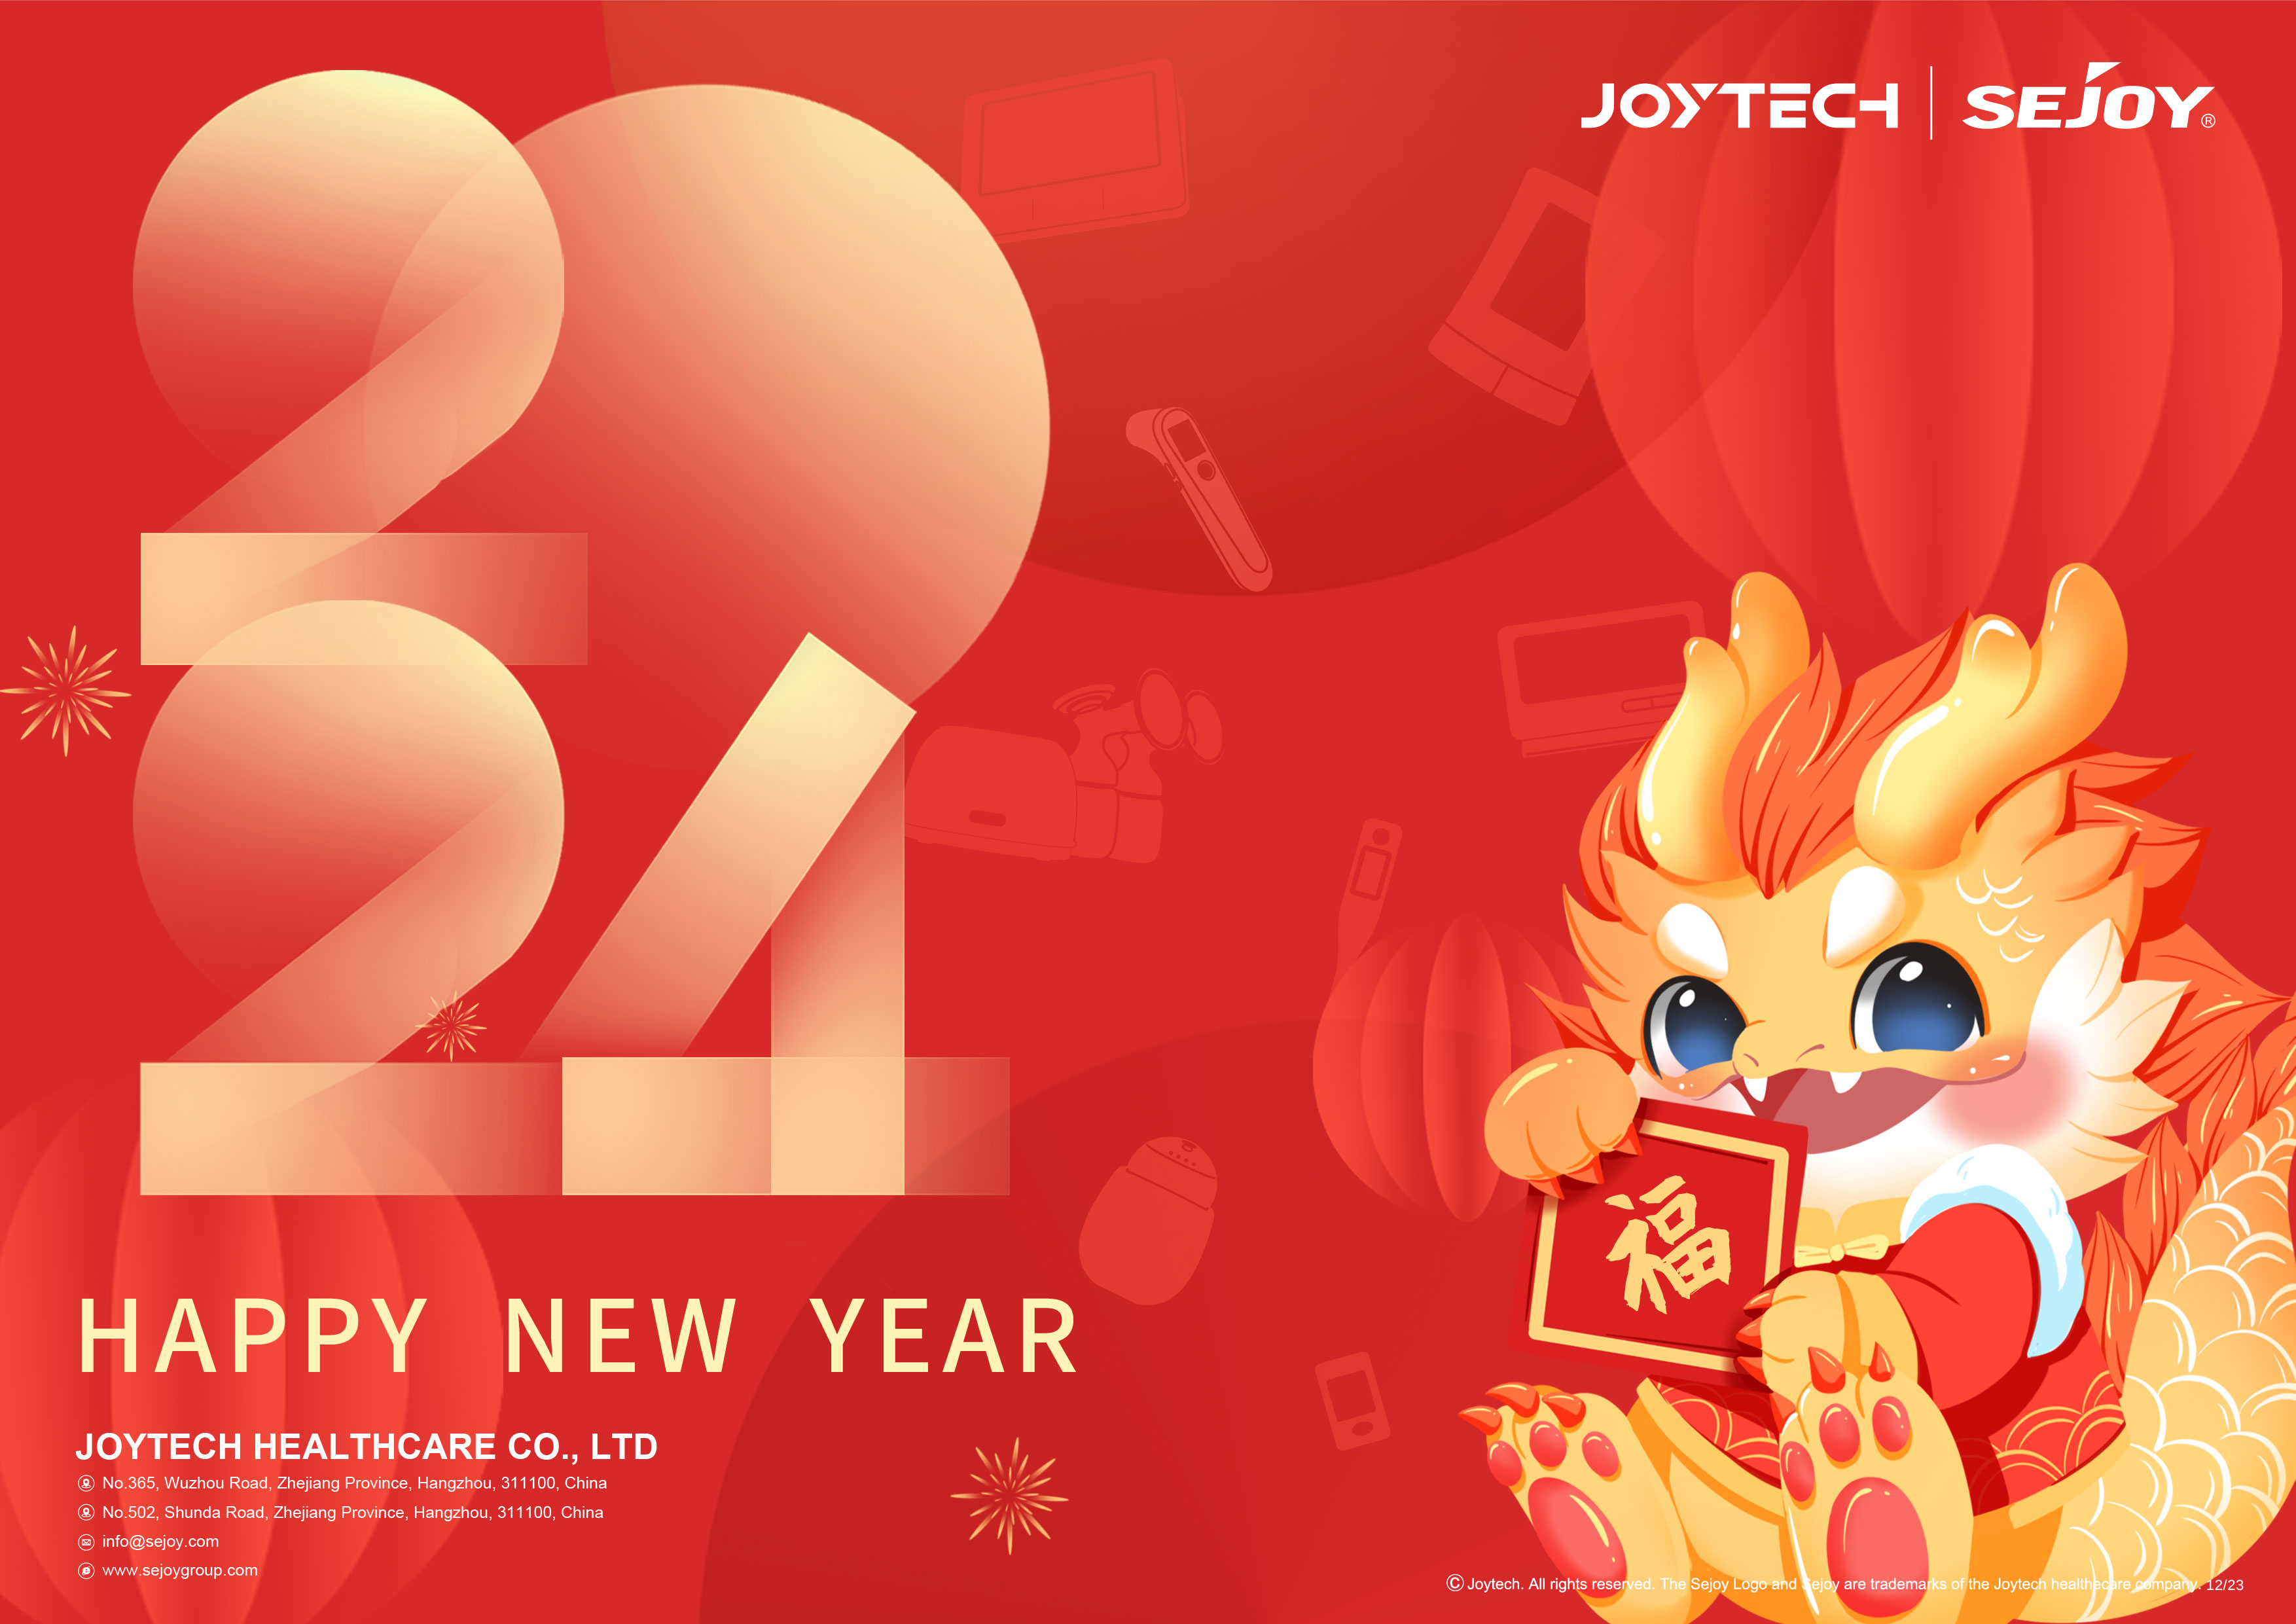 Oznámení o jarním festivalu Joytech – šťastný rok draka, šťastný každý den!